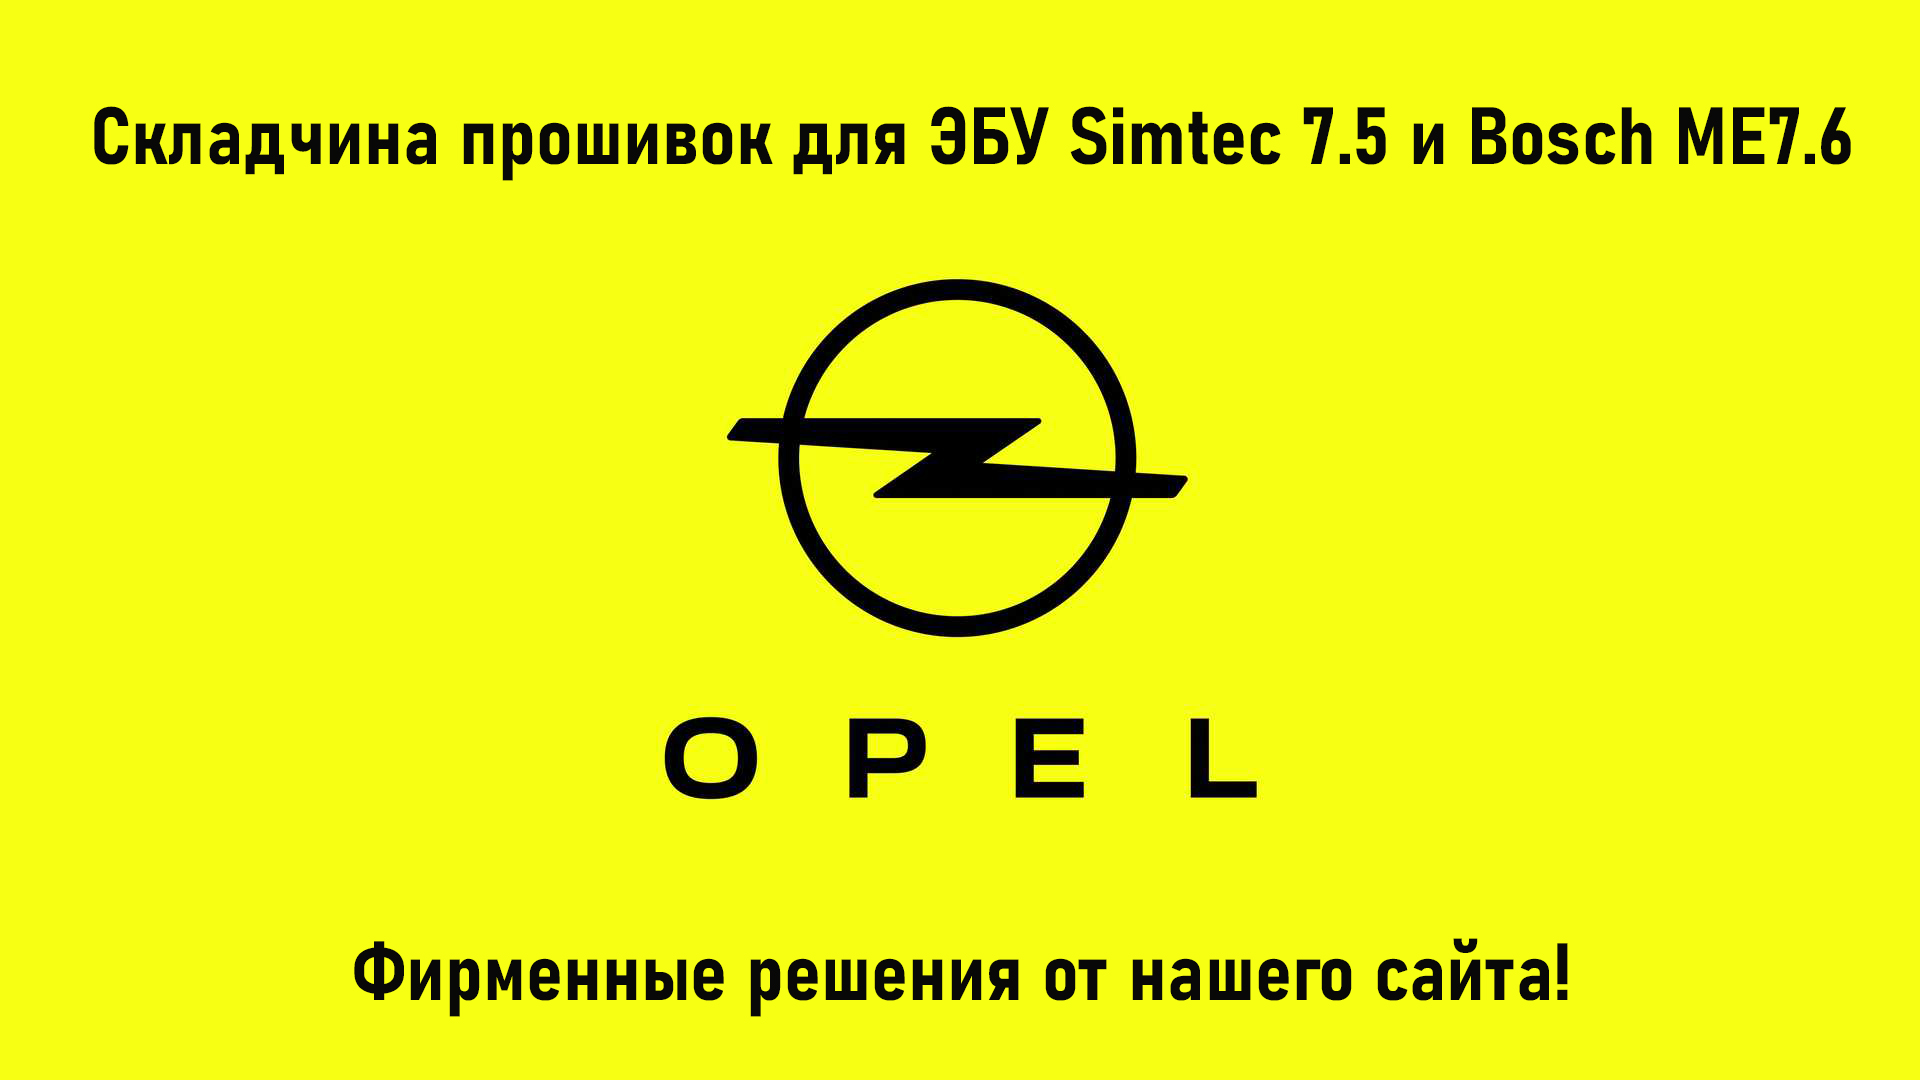 Пакет фирменных прошивок нашего сайта для автомобилей OPEL